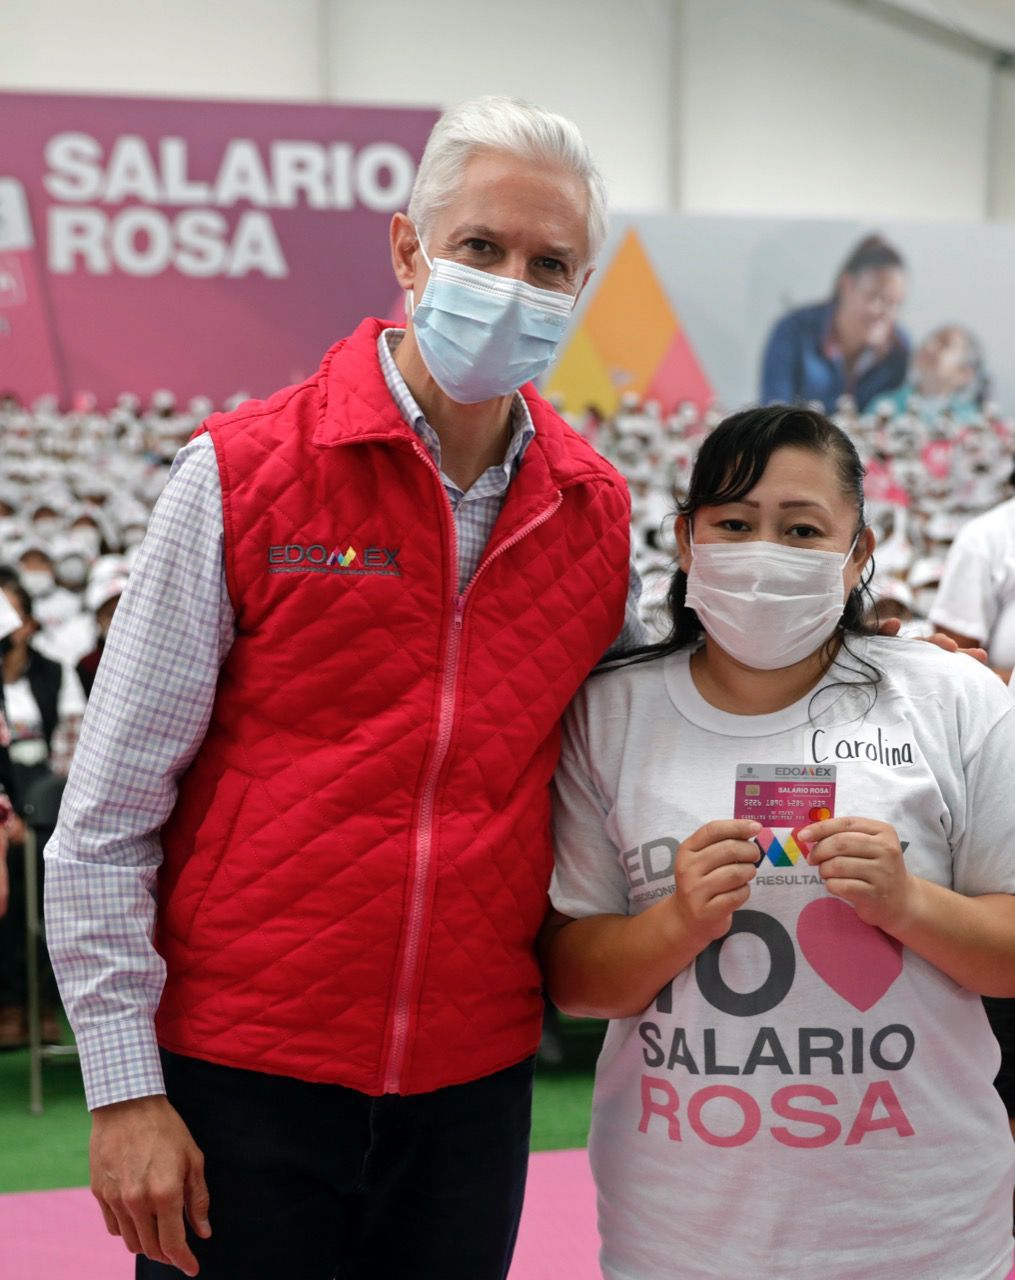 #INVIERTEN AMAS DE CASA MEXIQUENSES EL SALARIO ROSA EN BENEFICIO DE SUS FAMILIAS: ALFREDO DEL MAZO MAZA